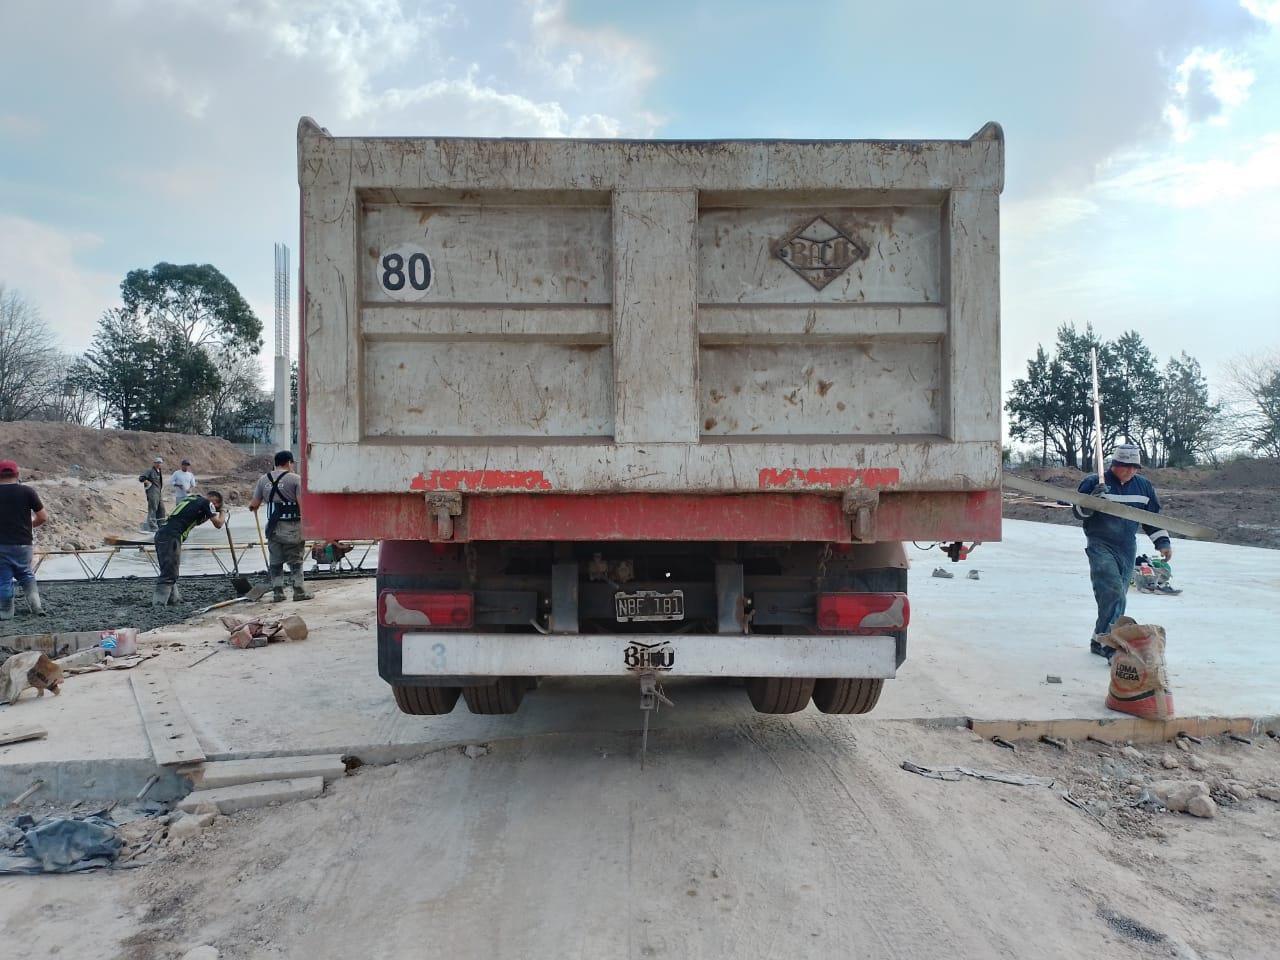 Camión desaparecido en el límite entre Quilmes y Florencio Varela marca Scania y perteneciente a una empresa constructora